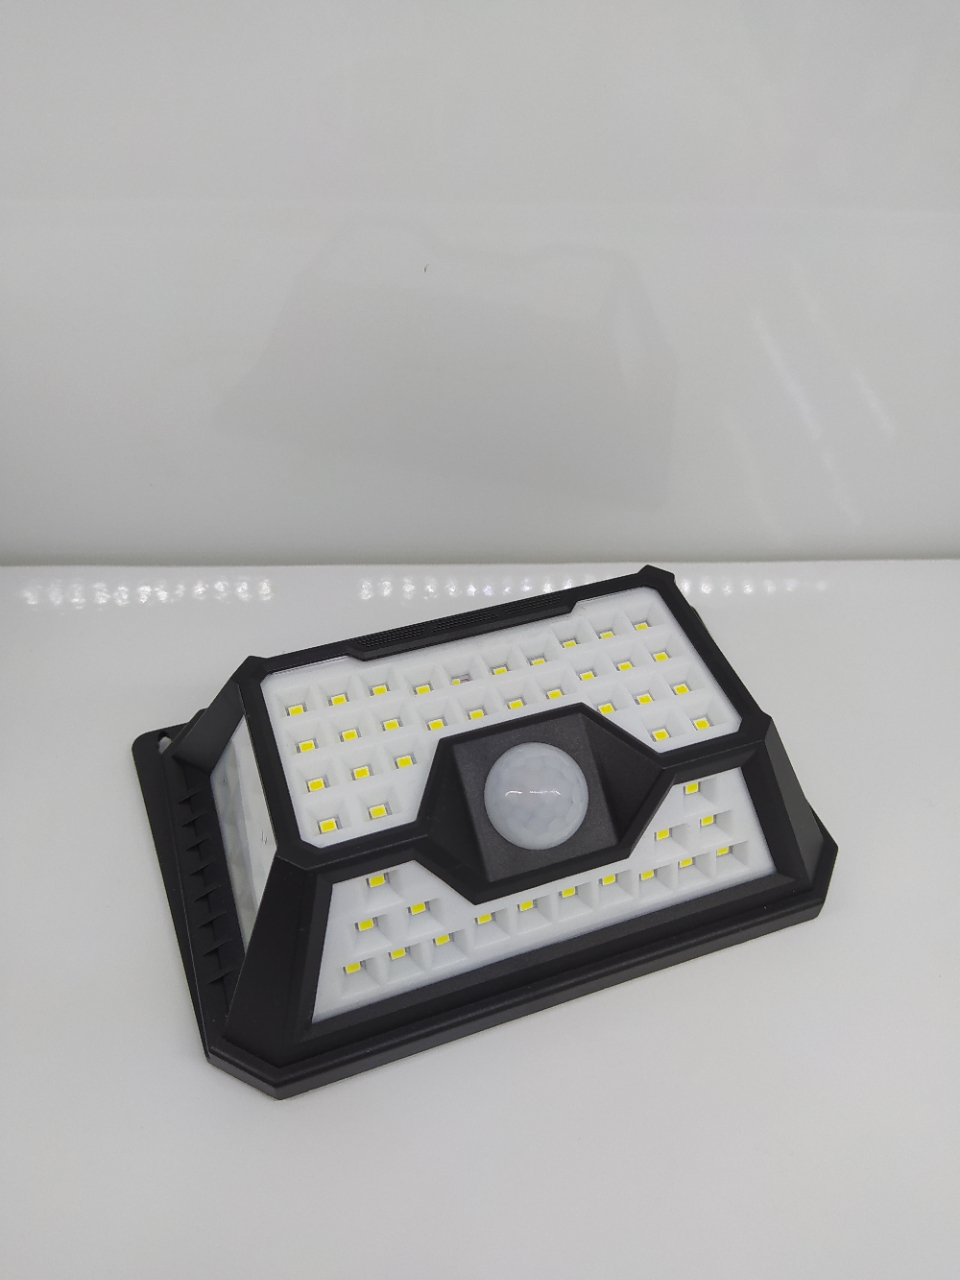 3D SOLAR WALL LIGHT WITH USB